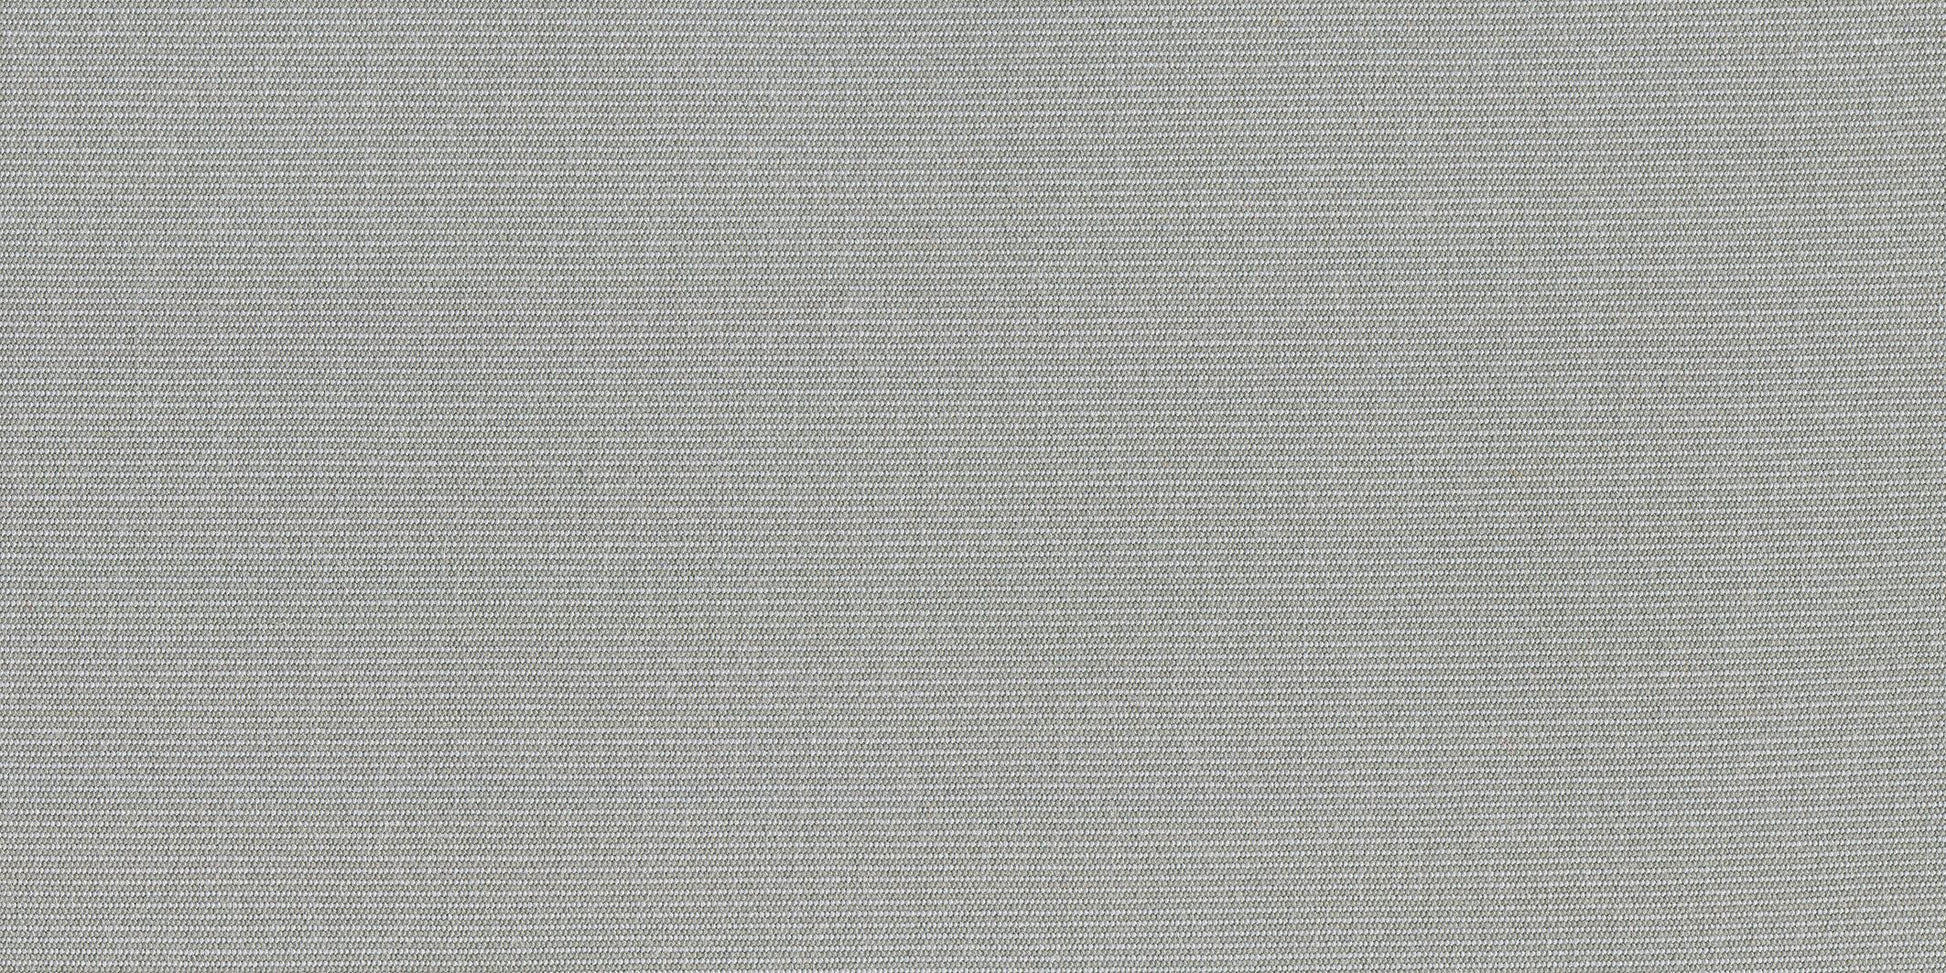 Ljus grå/beige markisväv - Tweed Argent